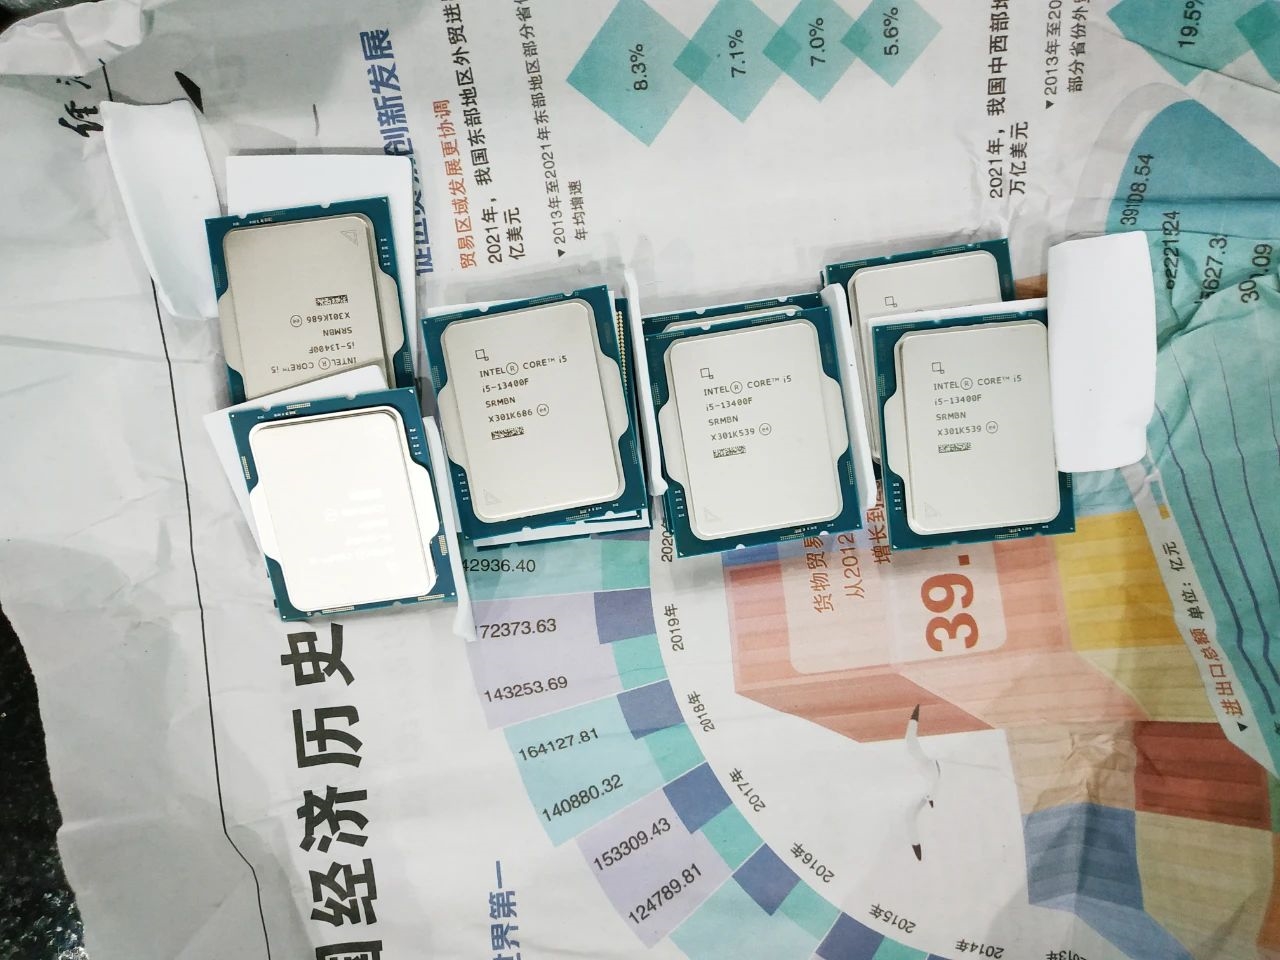 Rekordzista próbował przemycić do Chin 239 procesorów przyklejonych do swojego ciała